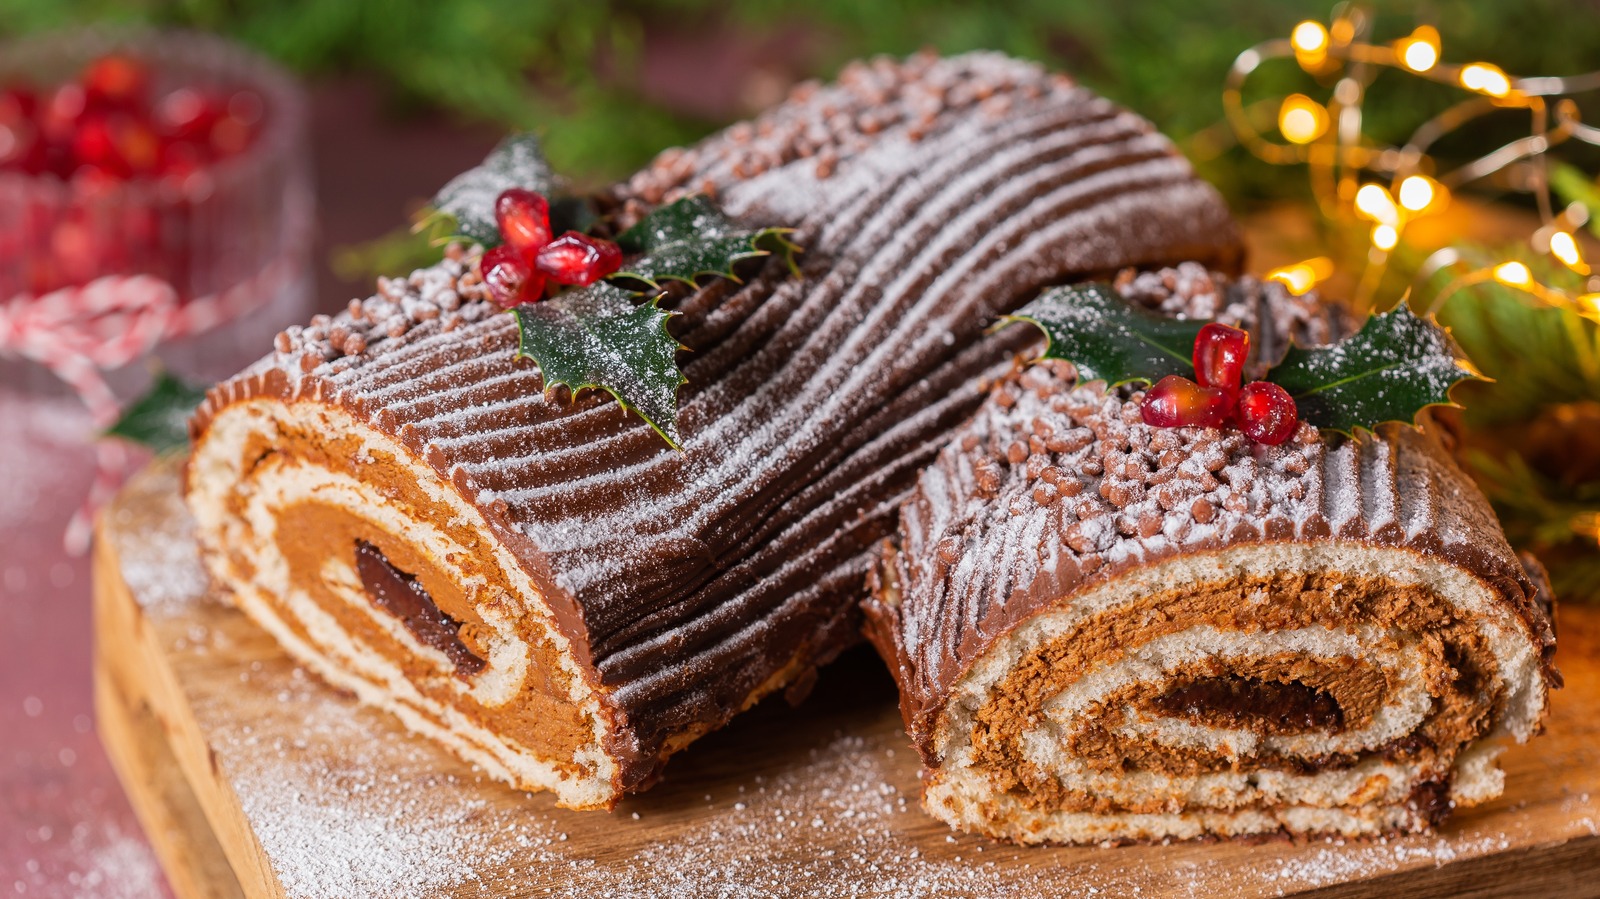 Woodland Christmas yule log cake